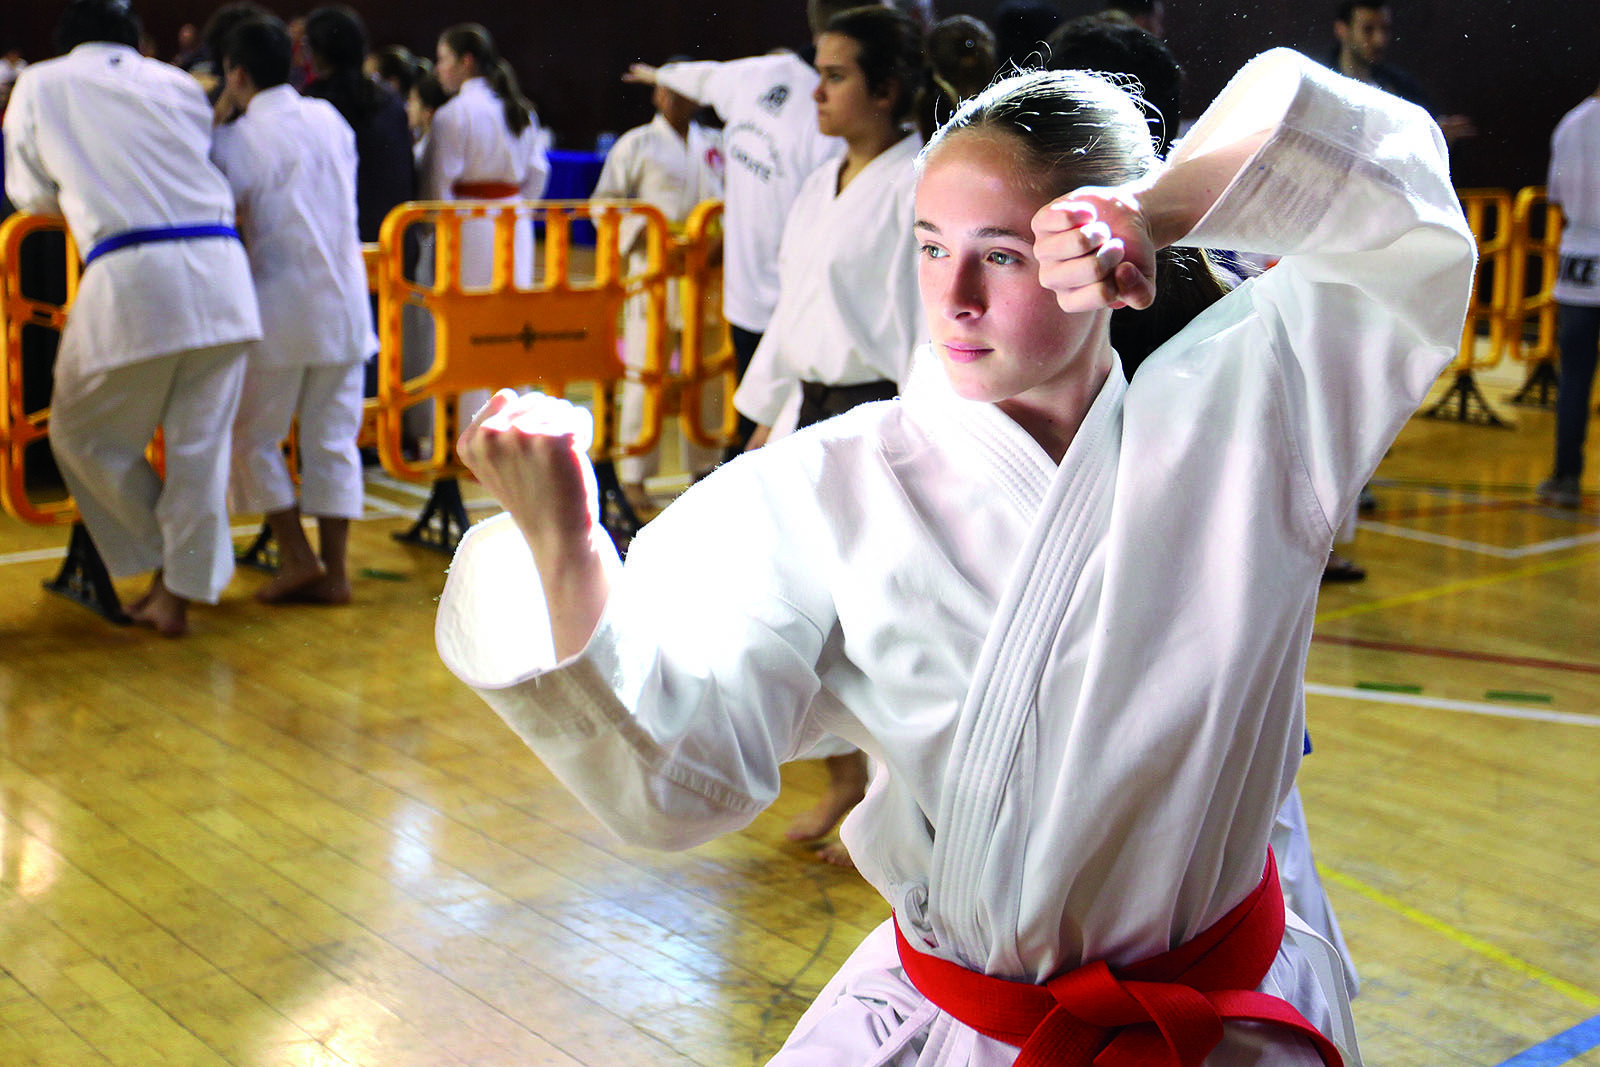 Torneig Ciutat de Sant Cugat de Karate FOTO: Lali Puig